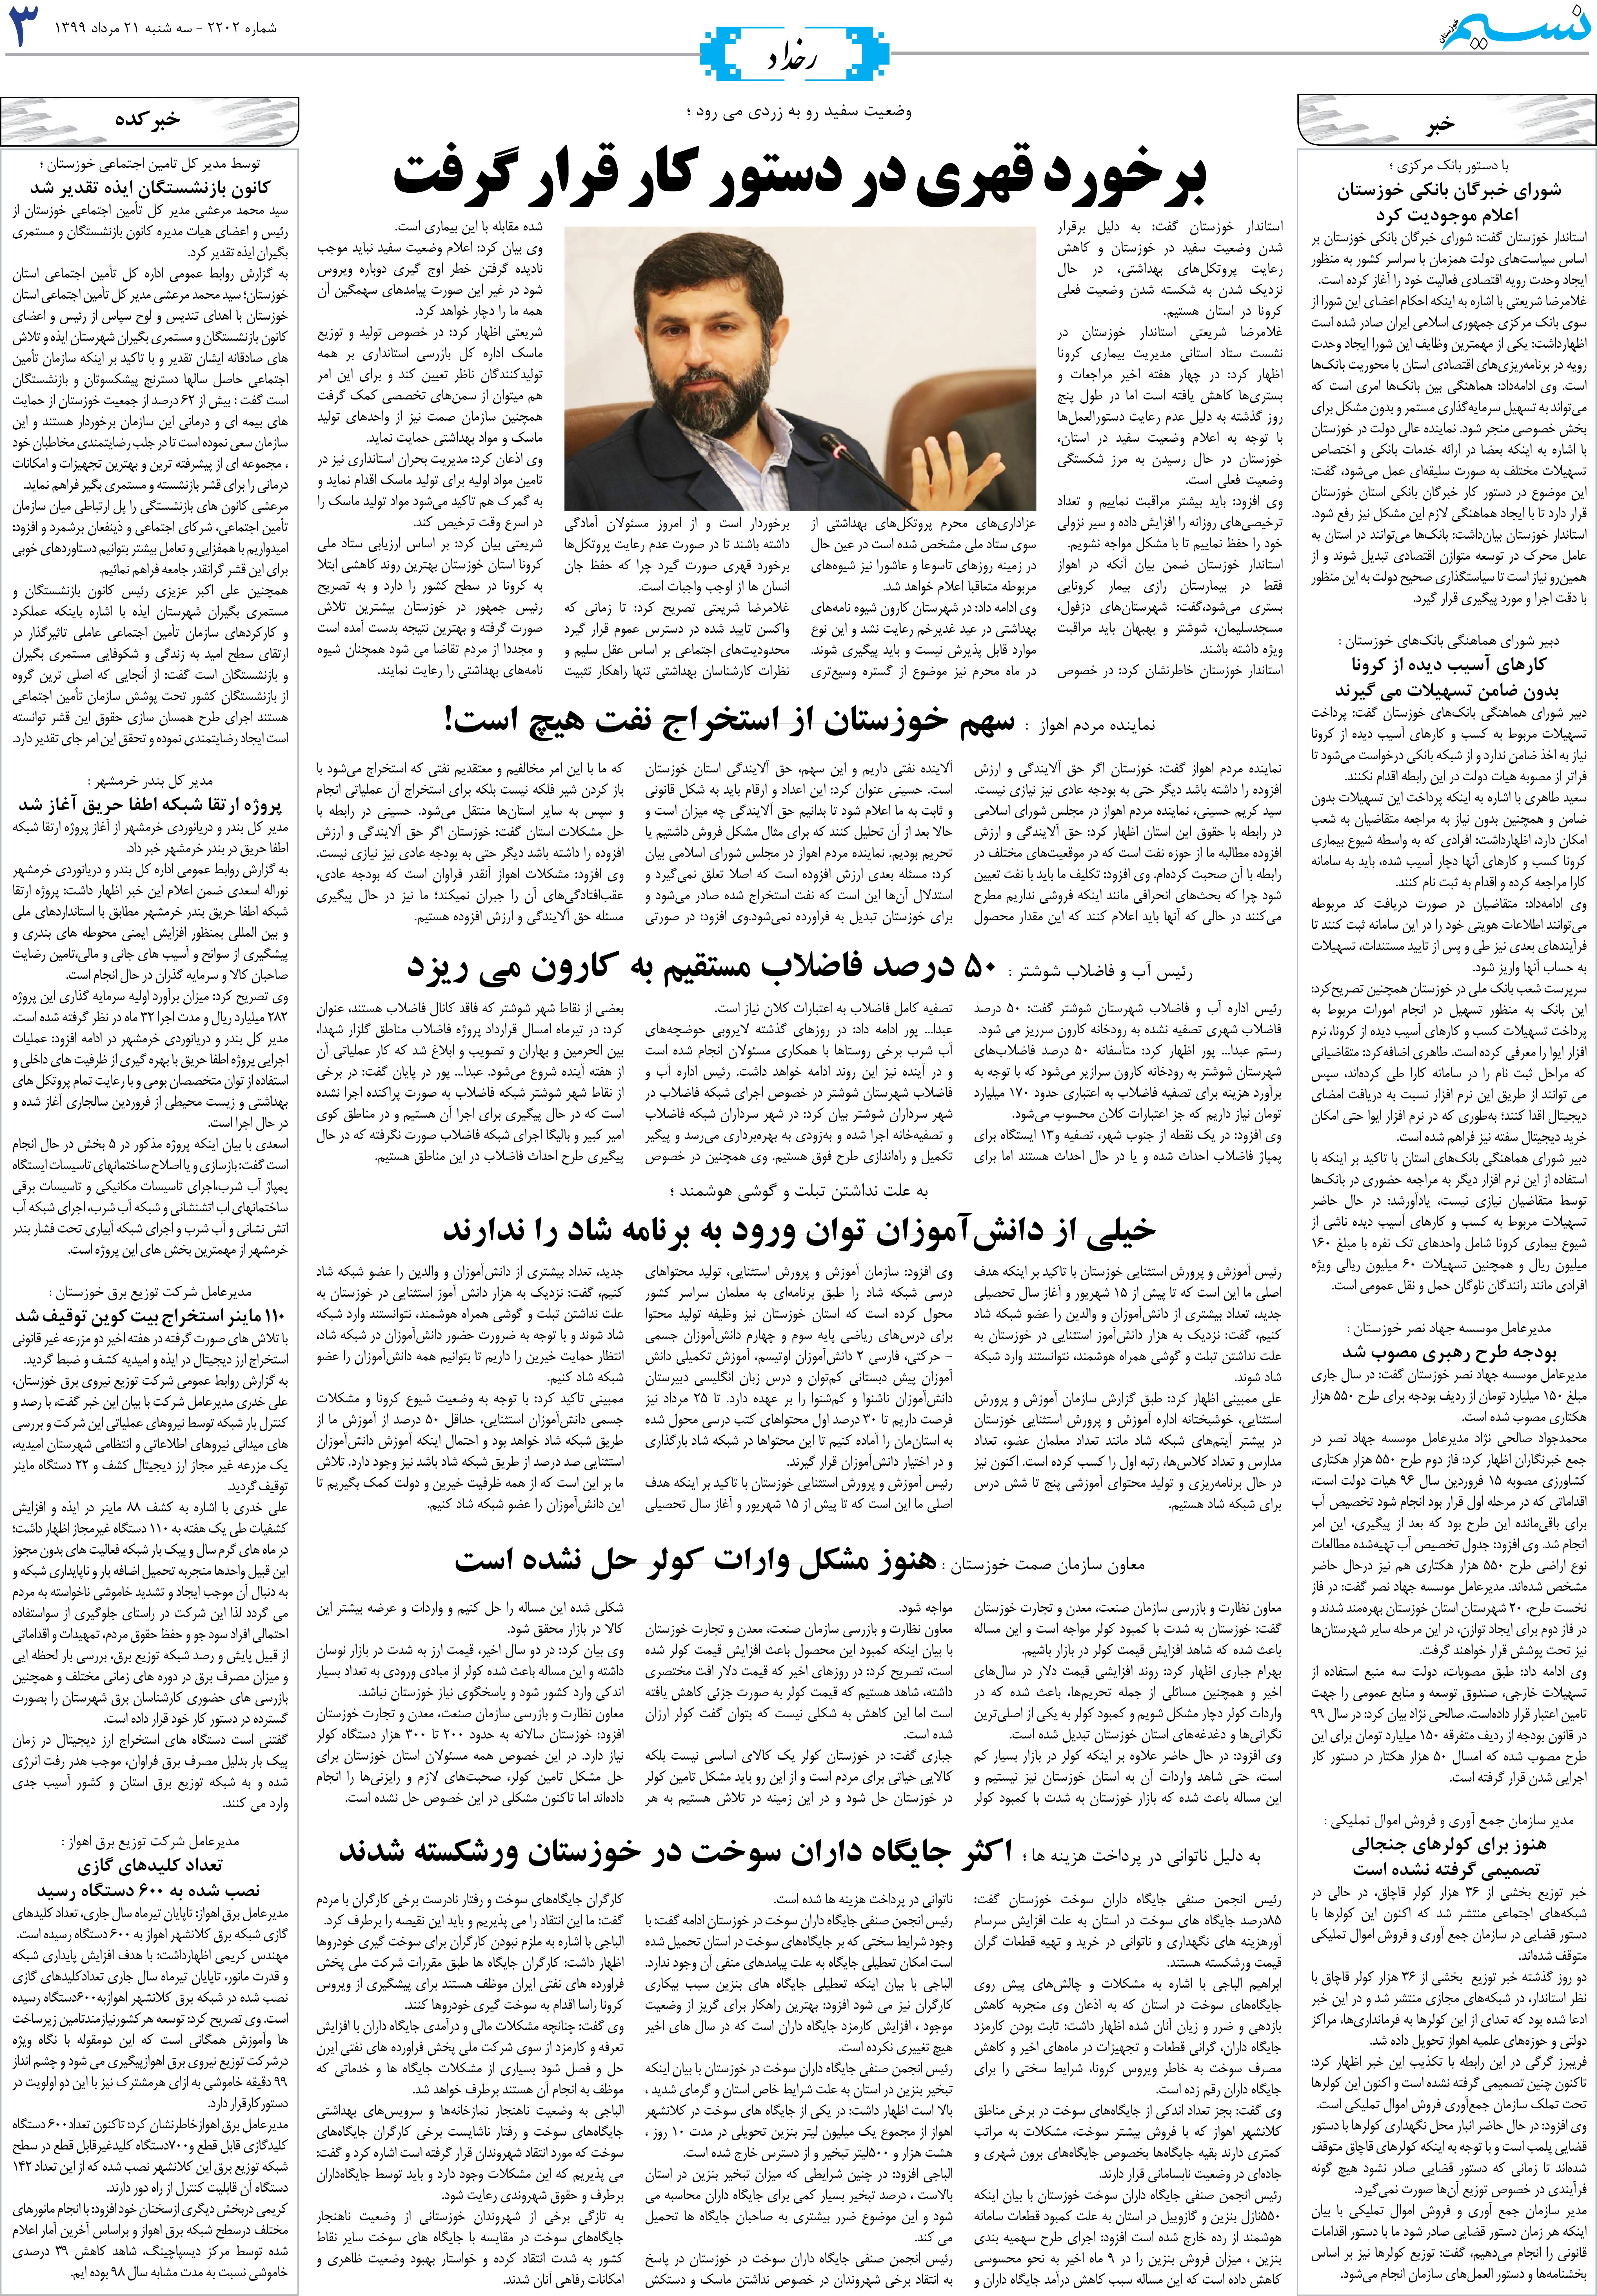 صفحه رخداد روزنامه نسیم شماره 2202